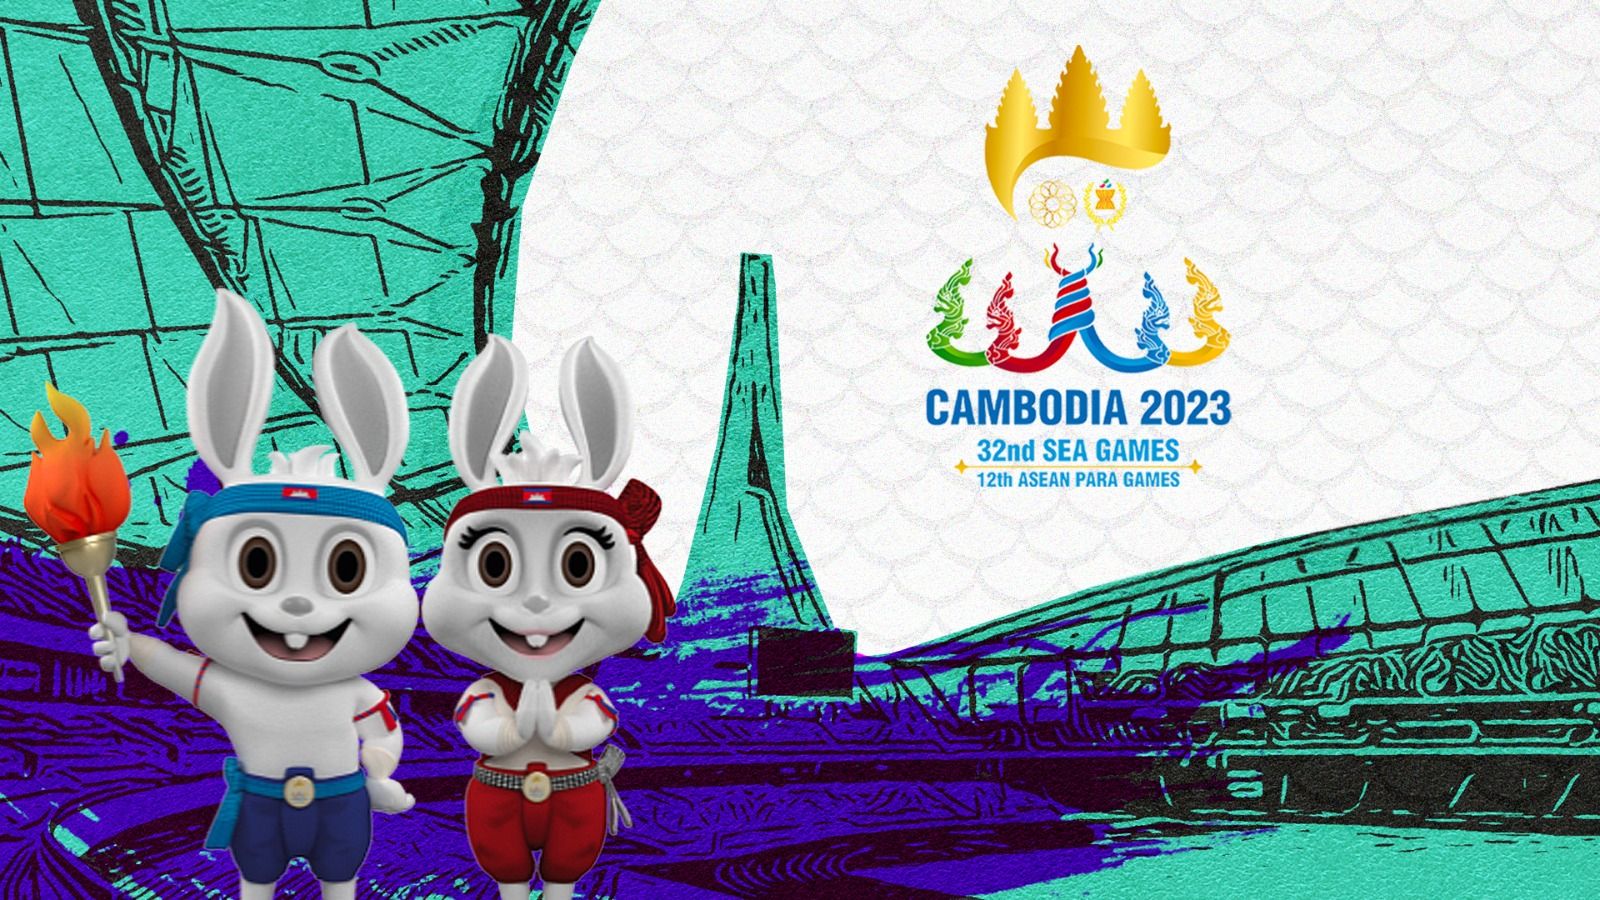 Pencak Silat, Lumbung Medali Emas Indonesia di SEA Games 2023